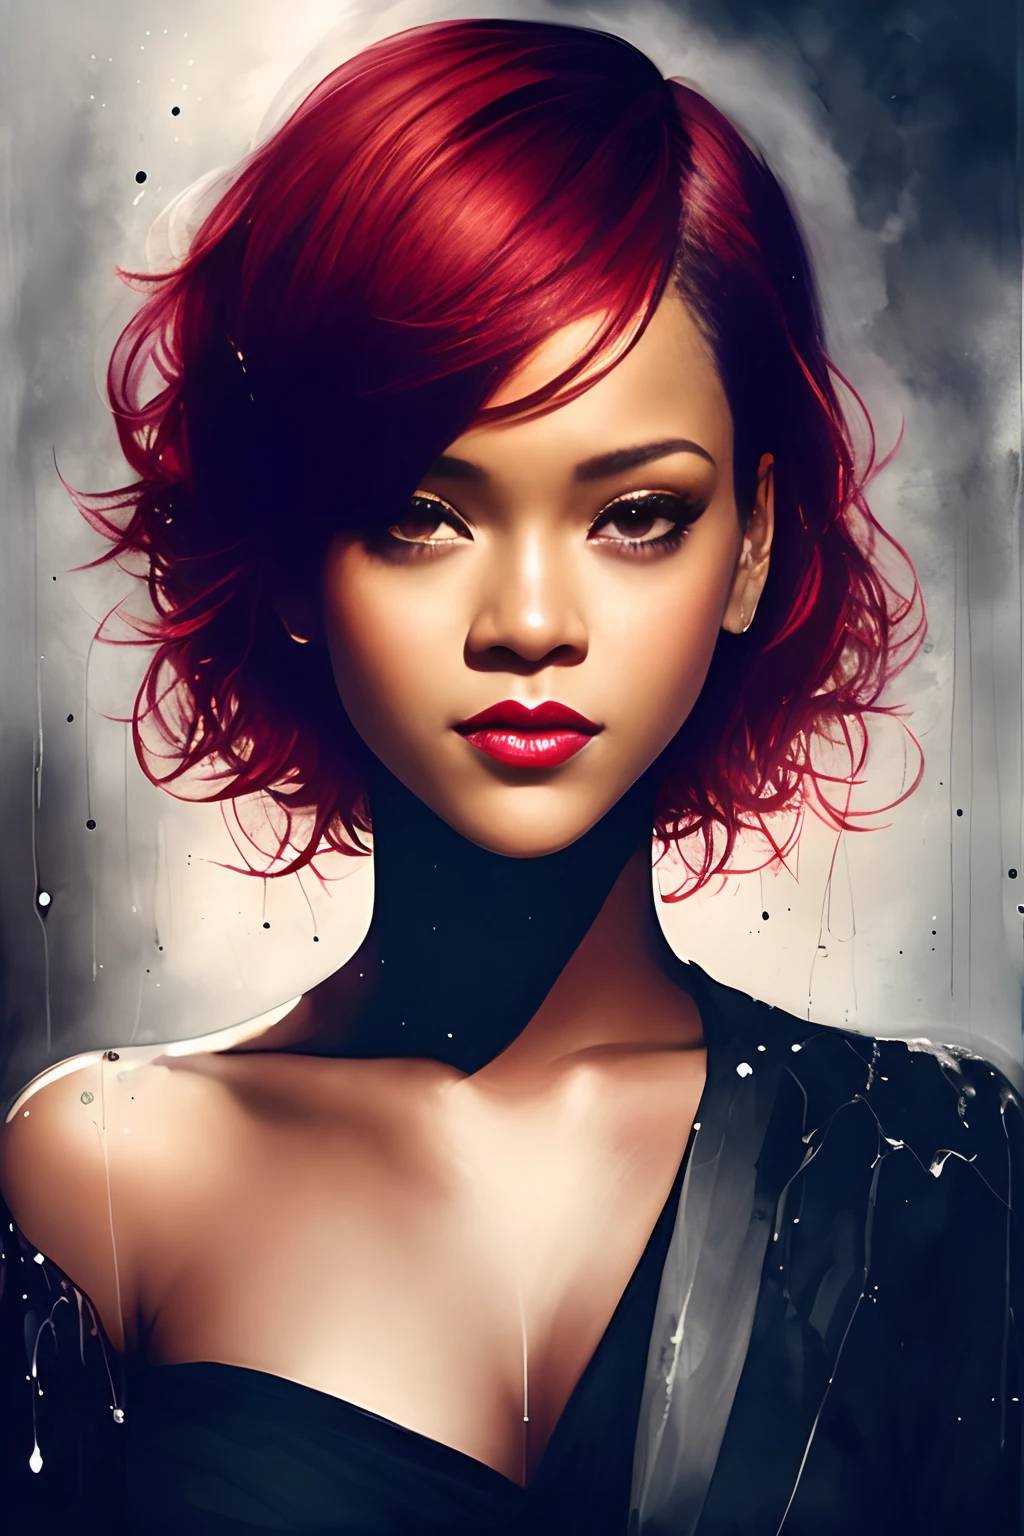 eine Frau (Rihanna) mit kurzen roten Haaren, lächeln, von Agnes Cecile, leuchtendes Design, Schwarz und weiß, Tinte tropft, Herbstlichter